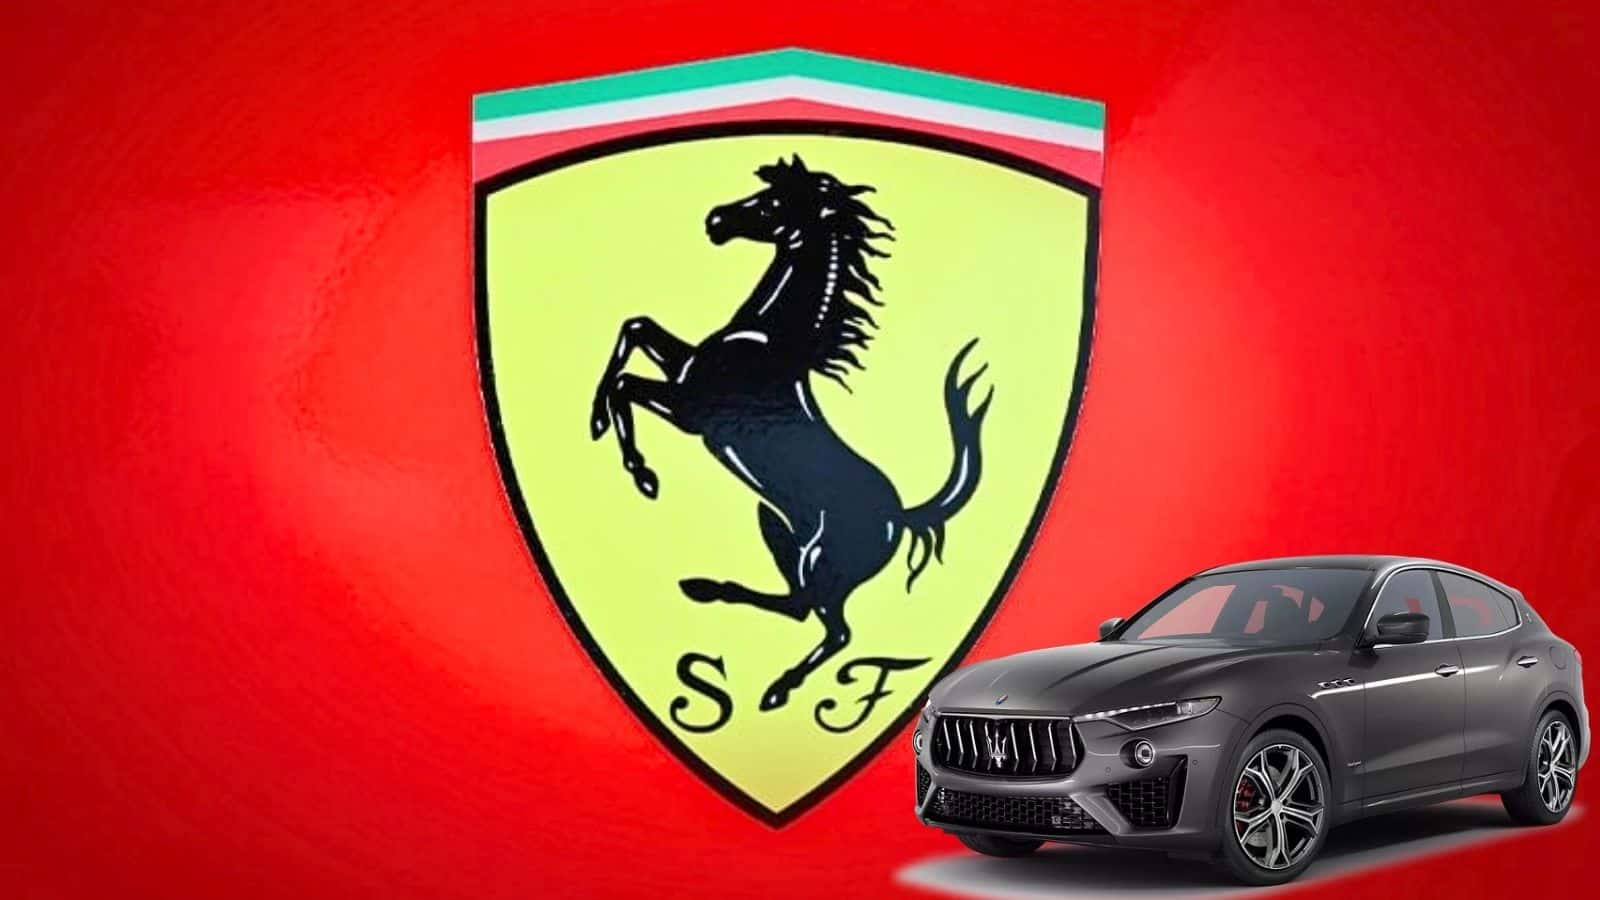  Ferrari e Maserati: un possibile acquisto del tridente all'orizzonte?